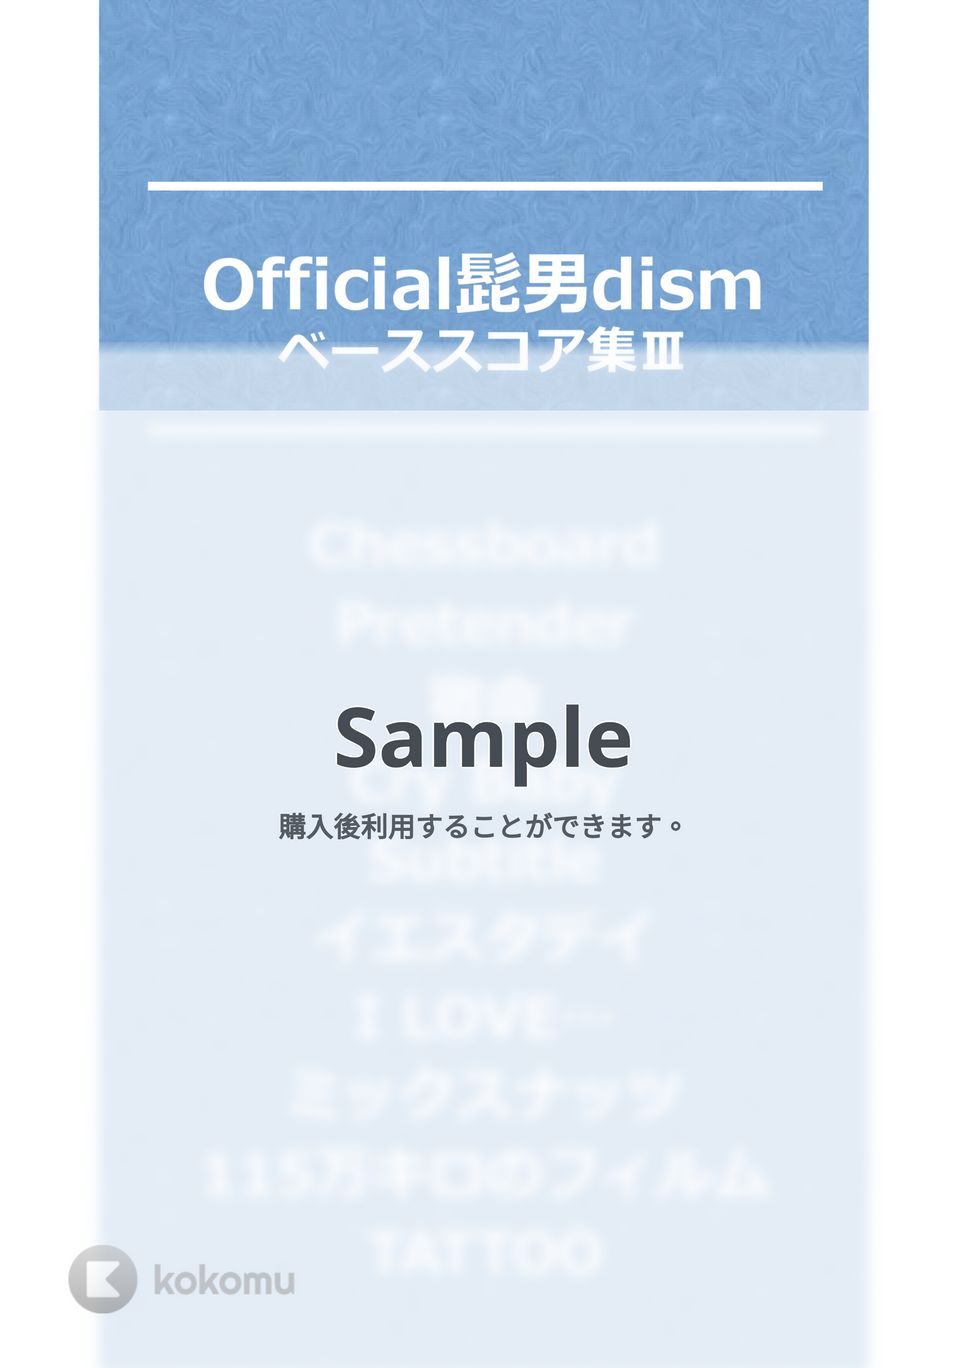 Official髭男dism - Official髭男dism ベースTAB譜面10曲セット集Ⅰ by たぶべー